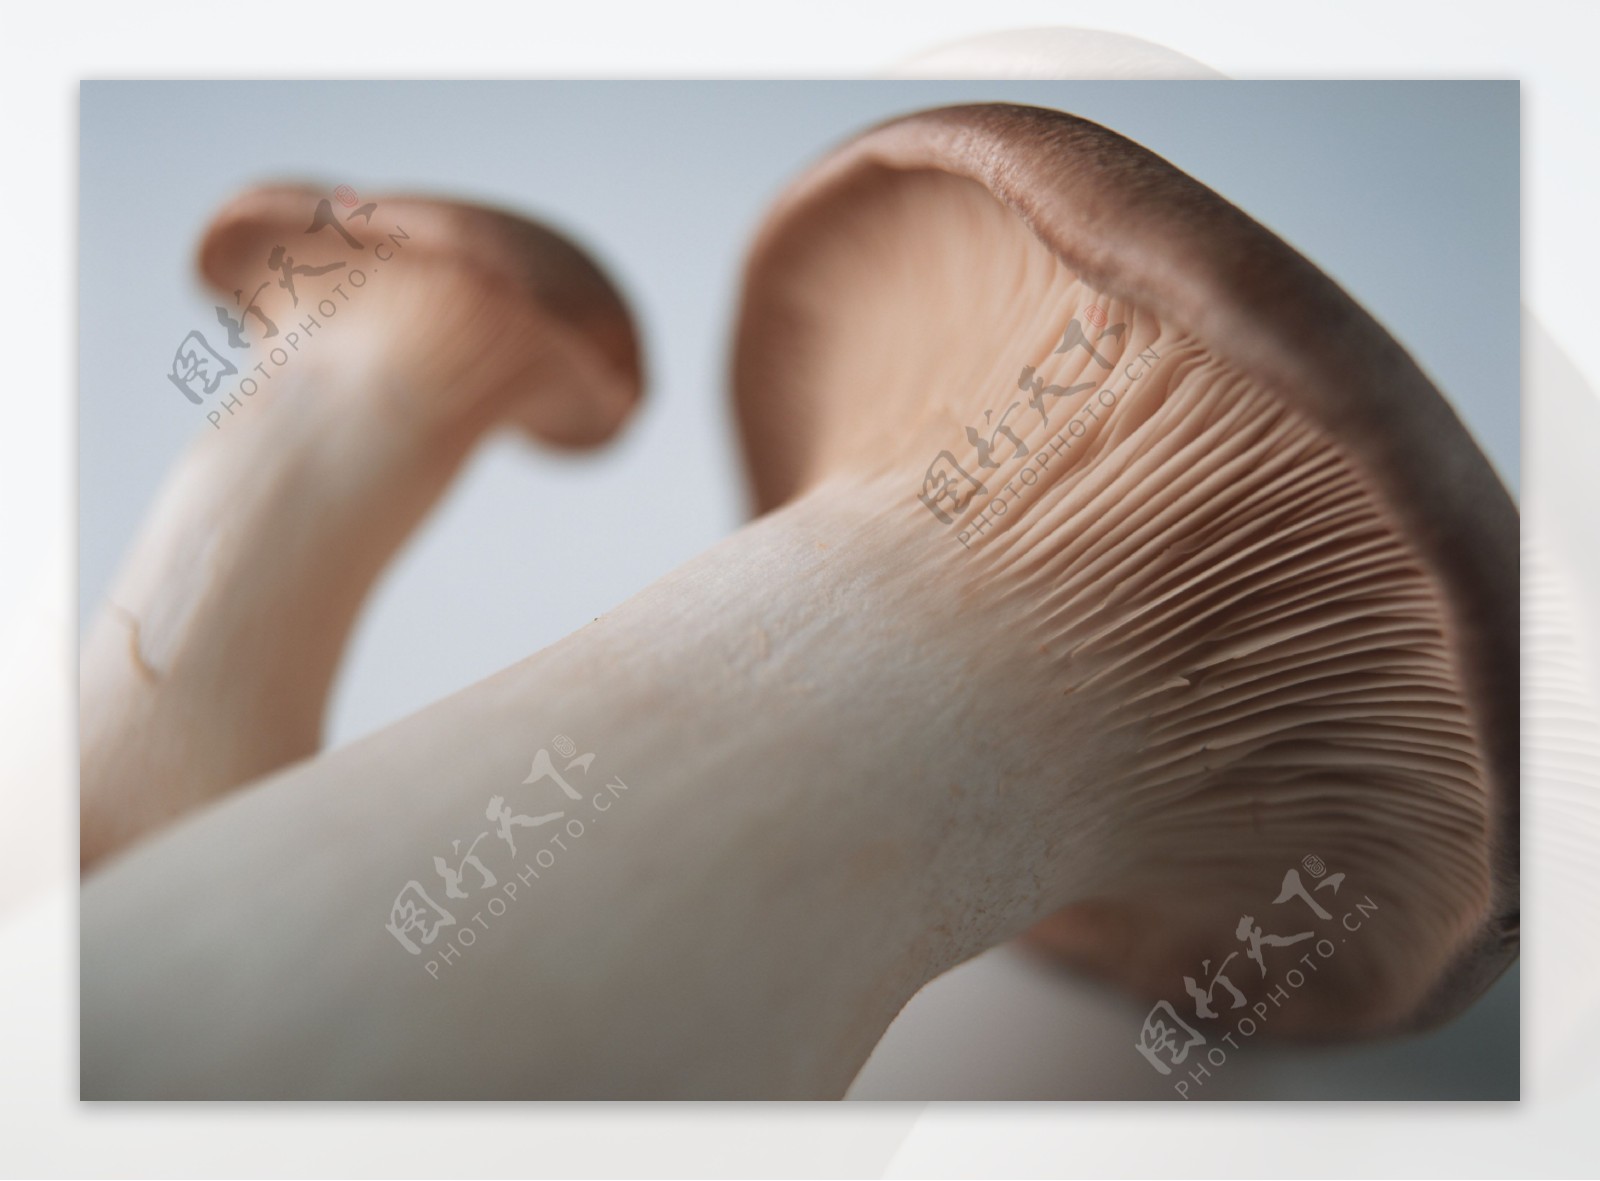 新鲜蘑菇摄影图片